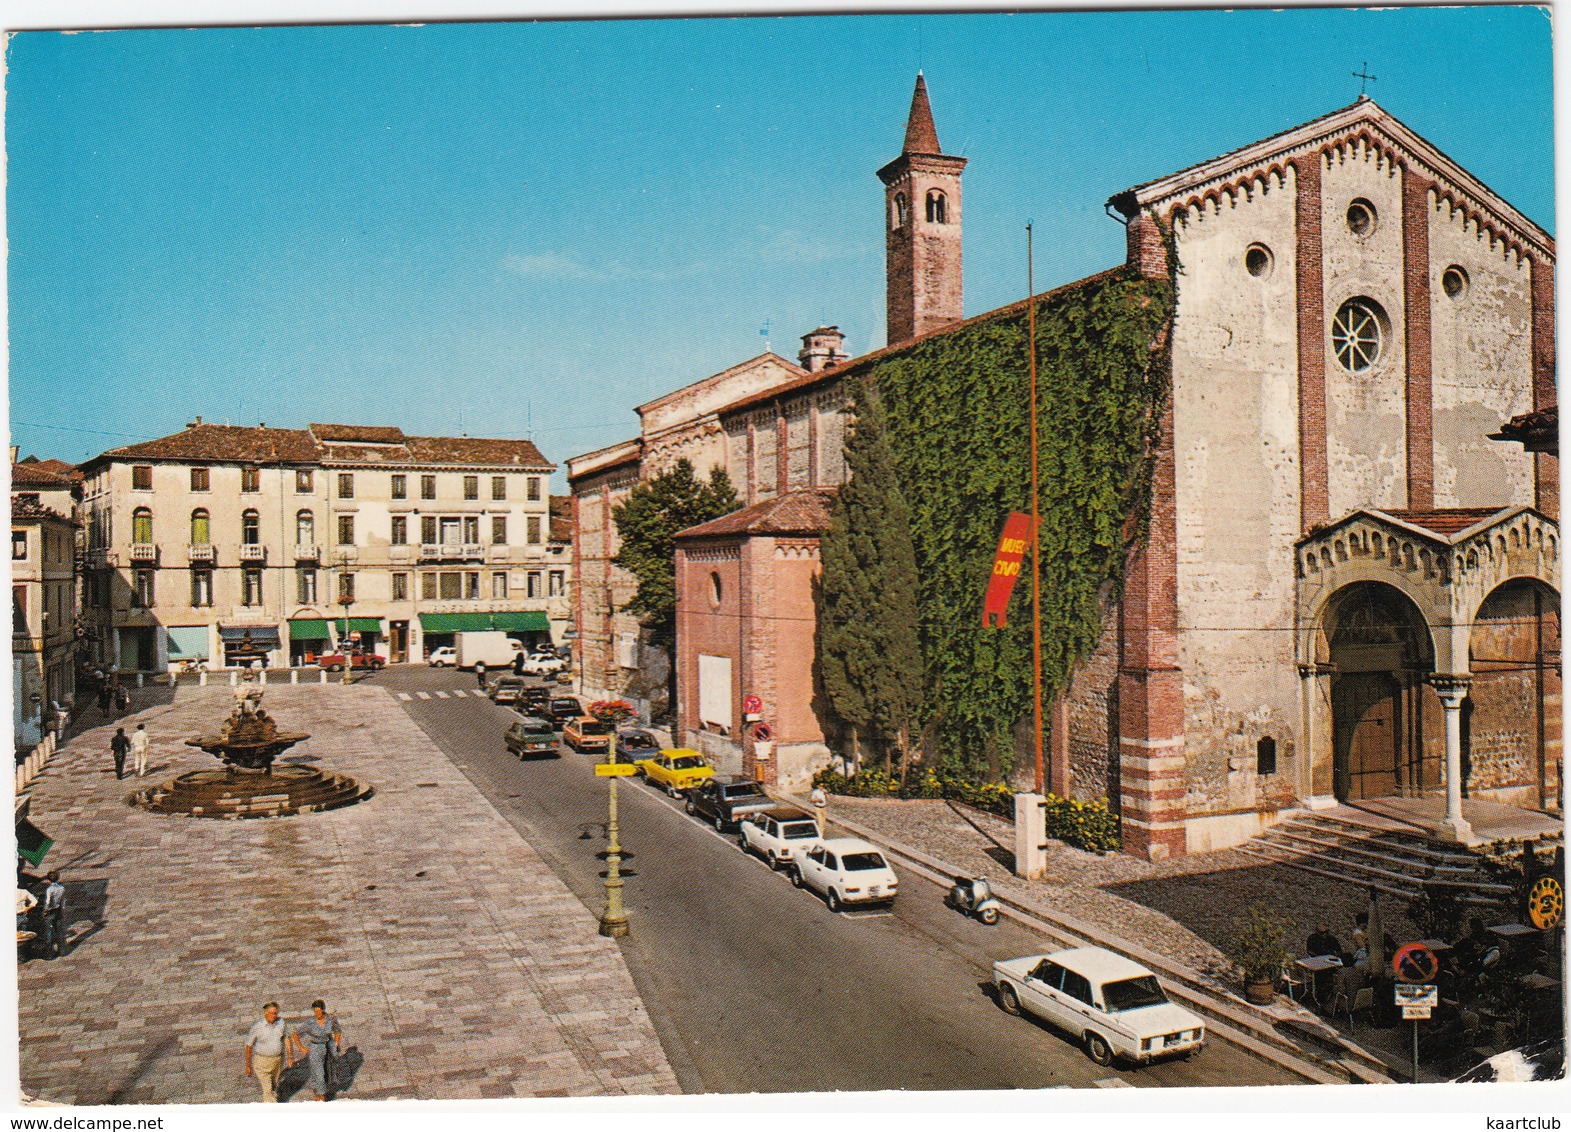 Bassano Del Grappa: FIAT 125S, 127, 128 RALLY, AUTOBIANCHI A112, ALFA ROMEO GIULIETTA '80, SCOOTER - Piazza Garibaldi - Turismo